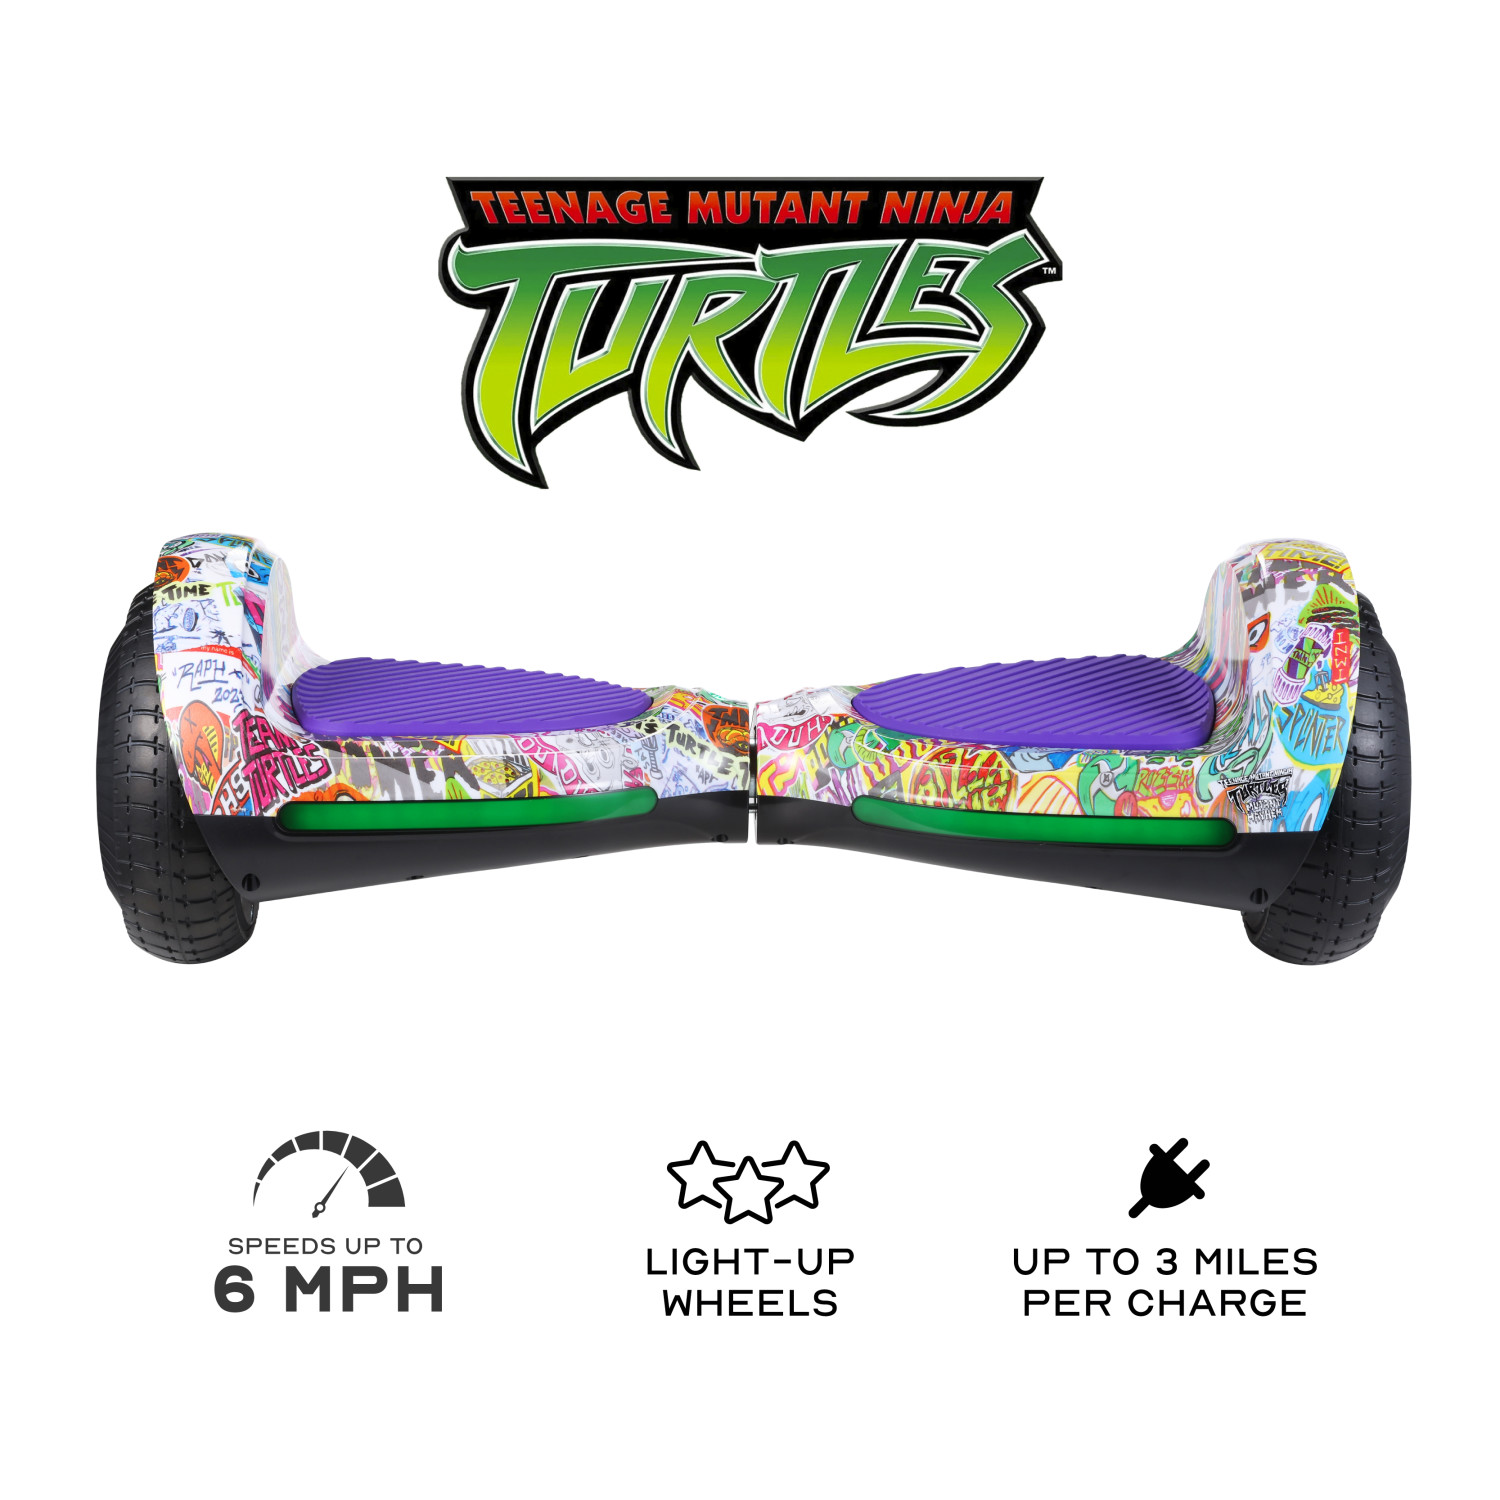 Teenage Mutant Ninja Turtles Hoverboard - image 2 of 9